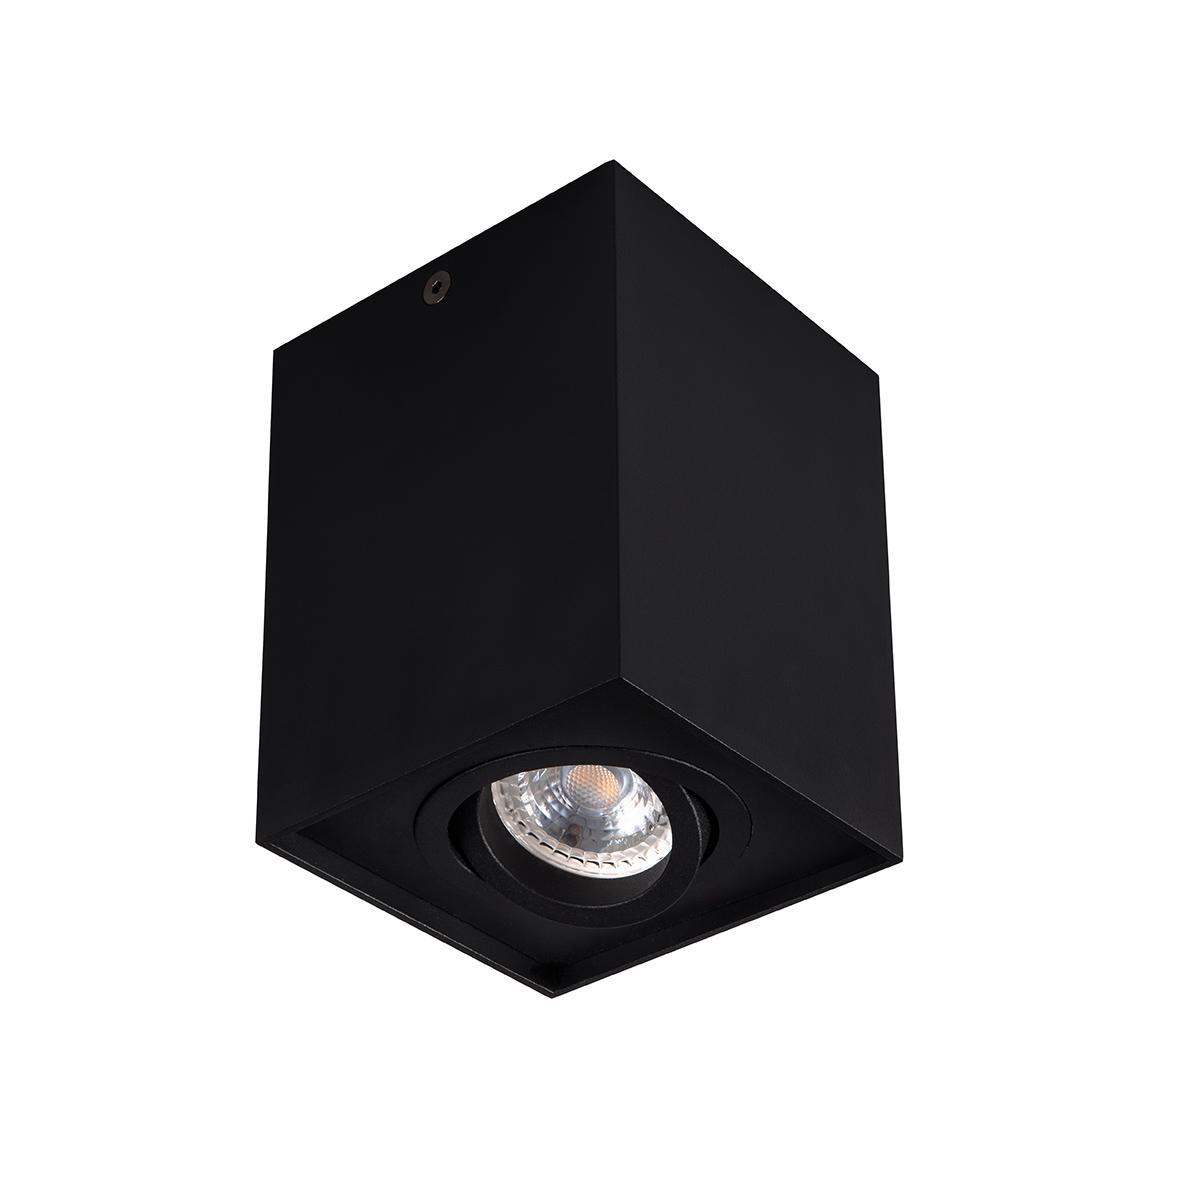 Накладной точечный светильник Kanlux GORD DLP 50-B 25471 накладной точечный светильник kanlux riti gu10 b b 27567